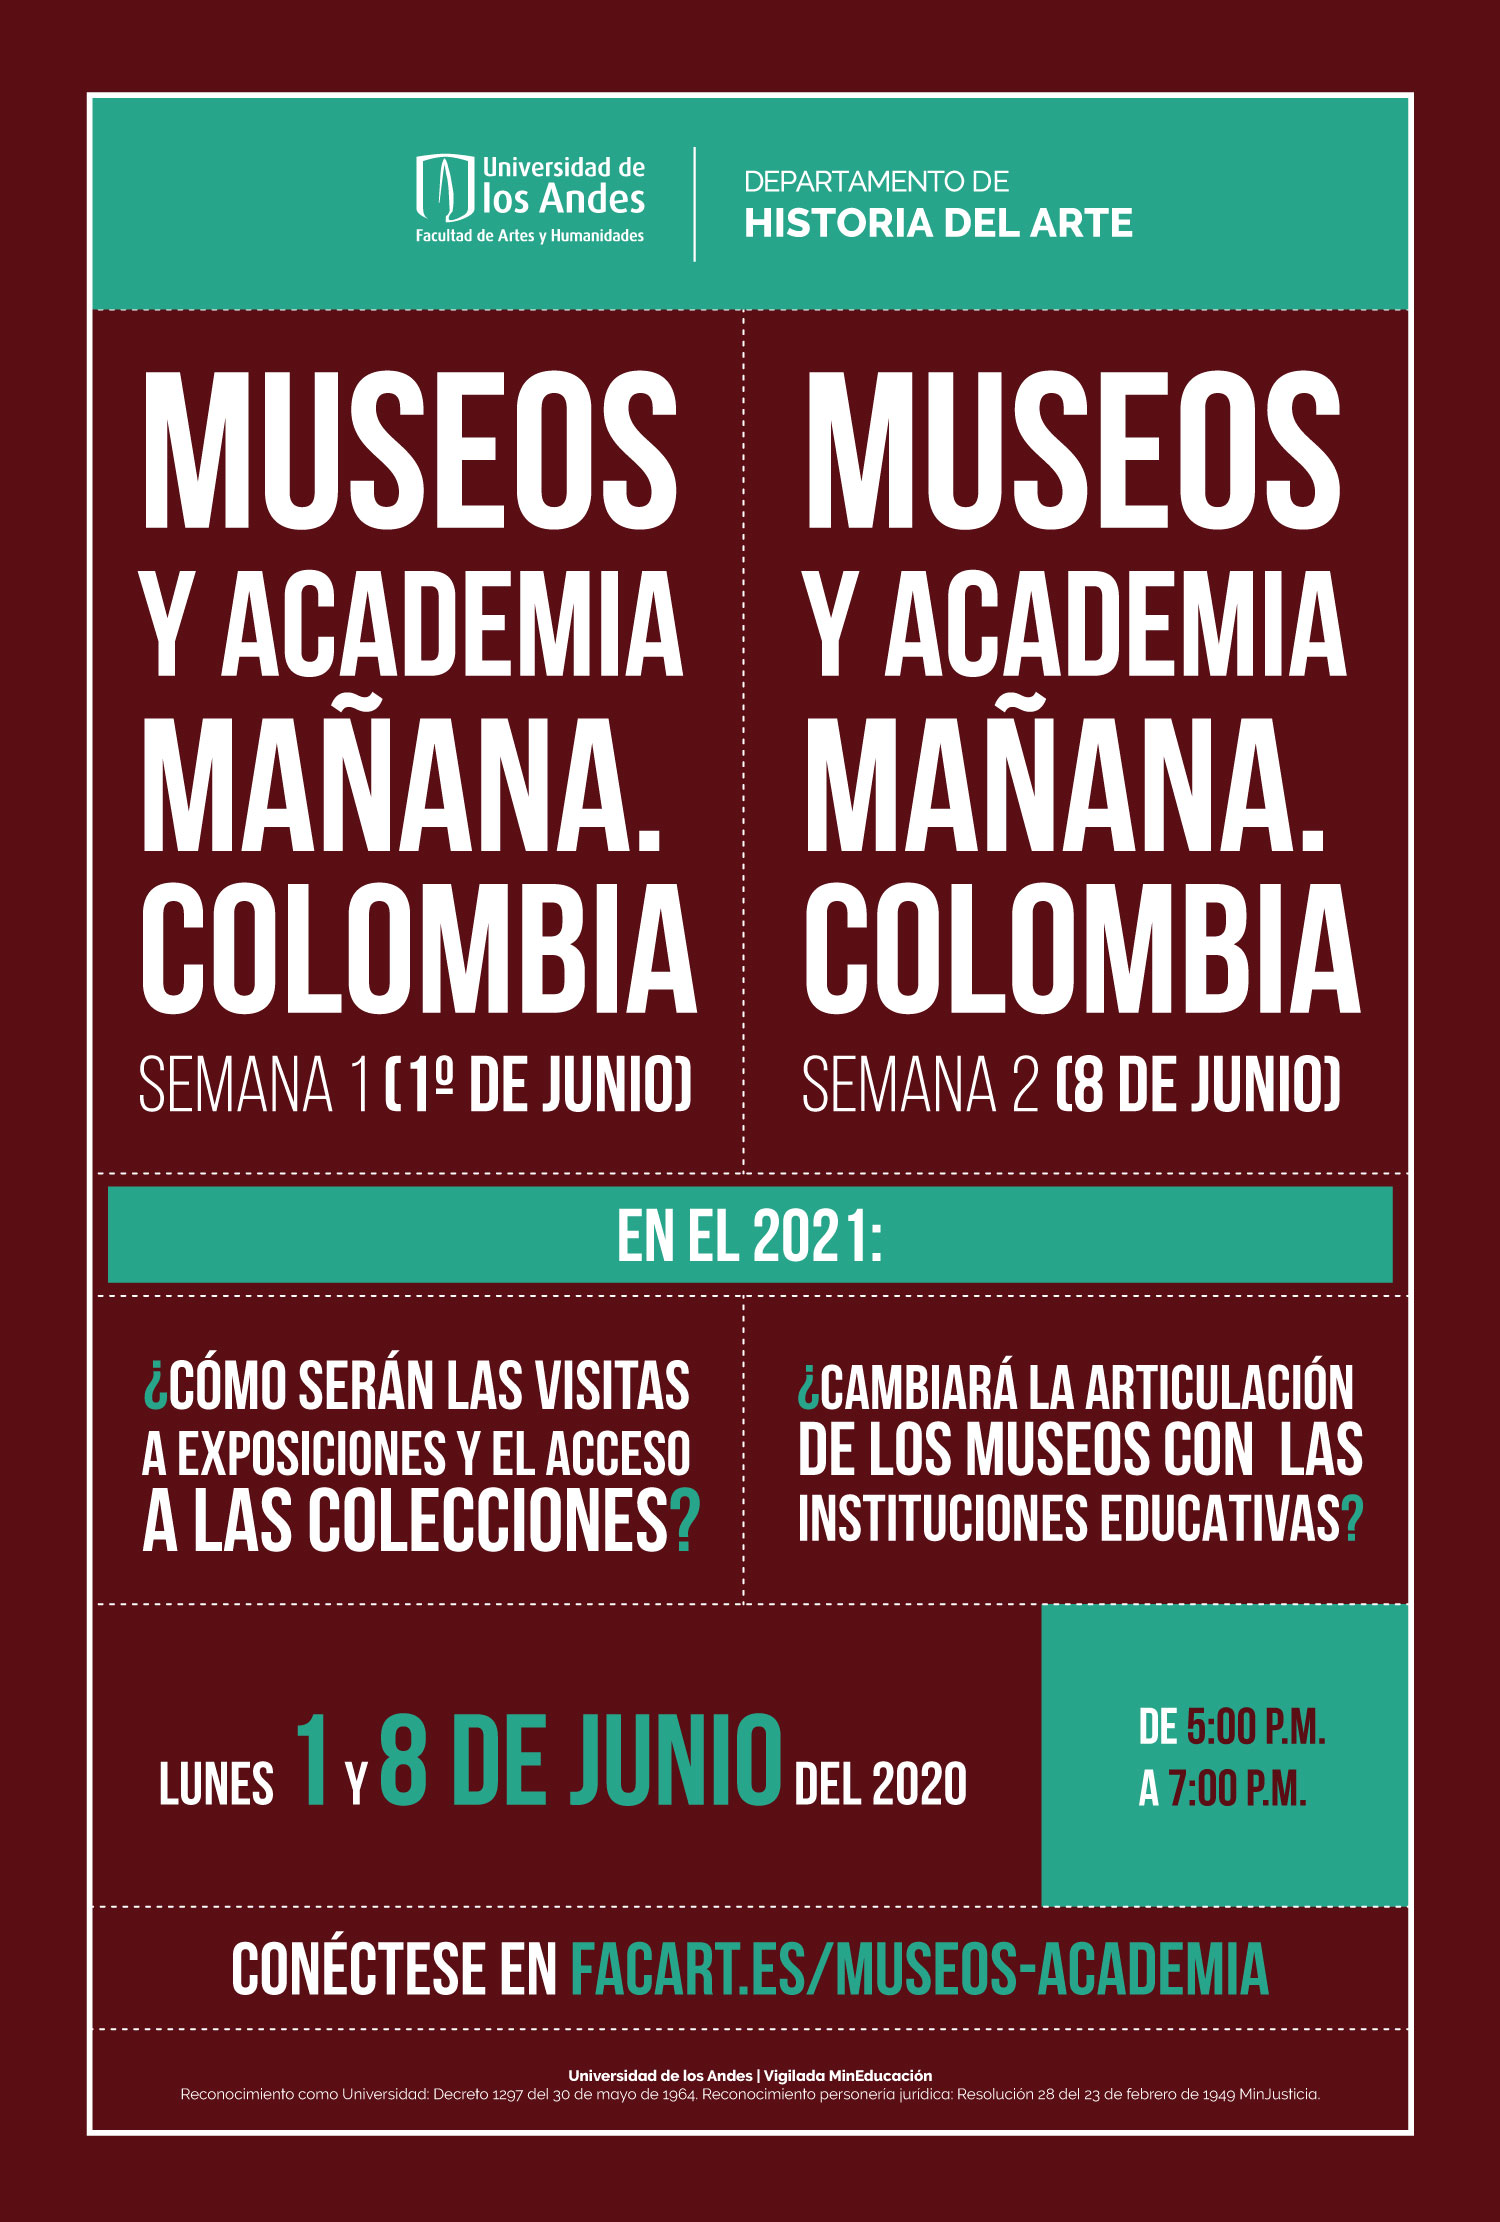 Museos y academía mañana Colombia